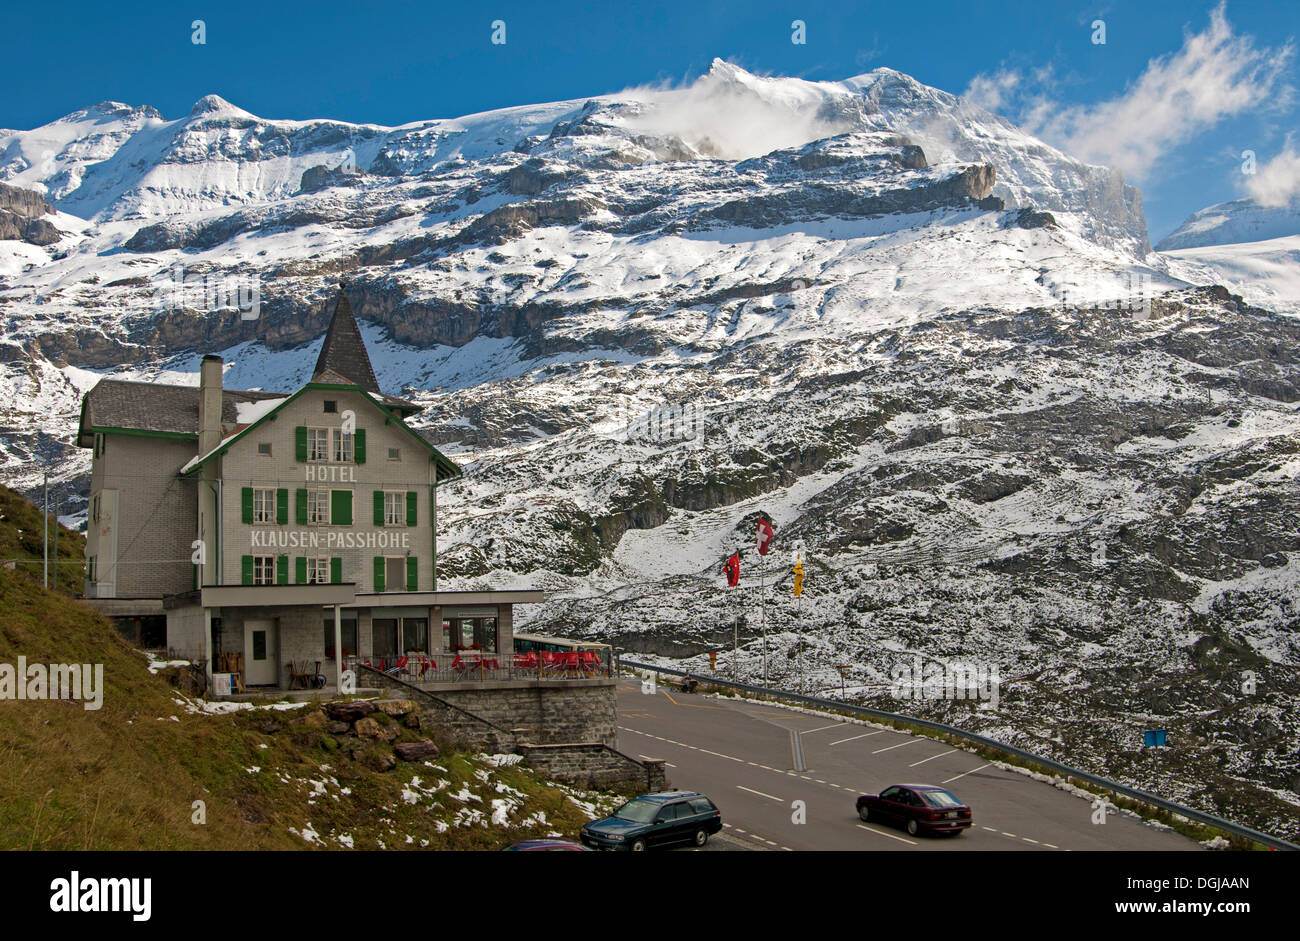 Hôtel Klausenpasshoehe à côté de la route de col du Klausen, Canton d'Uri, Suisse Banque D'Images